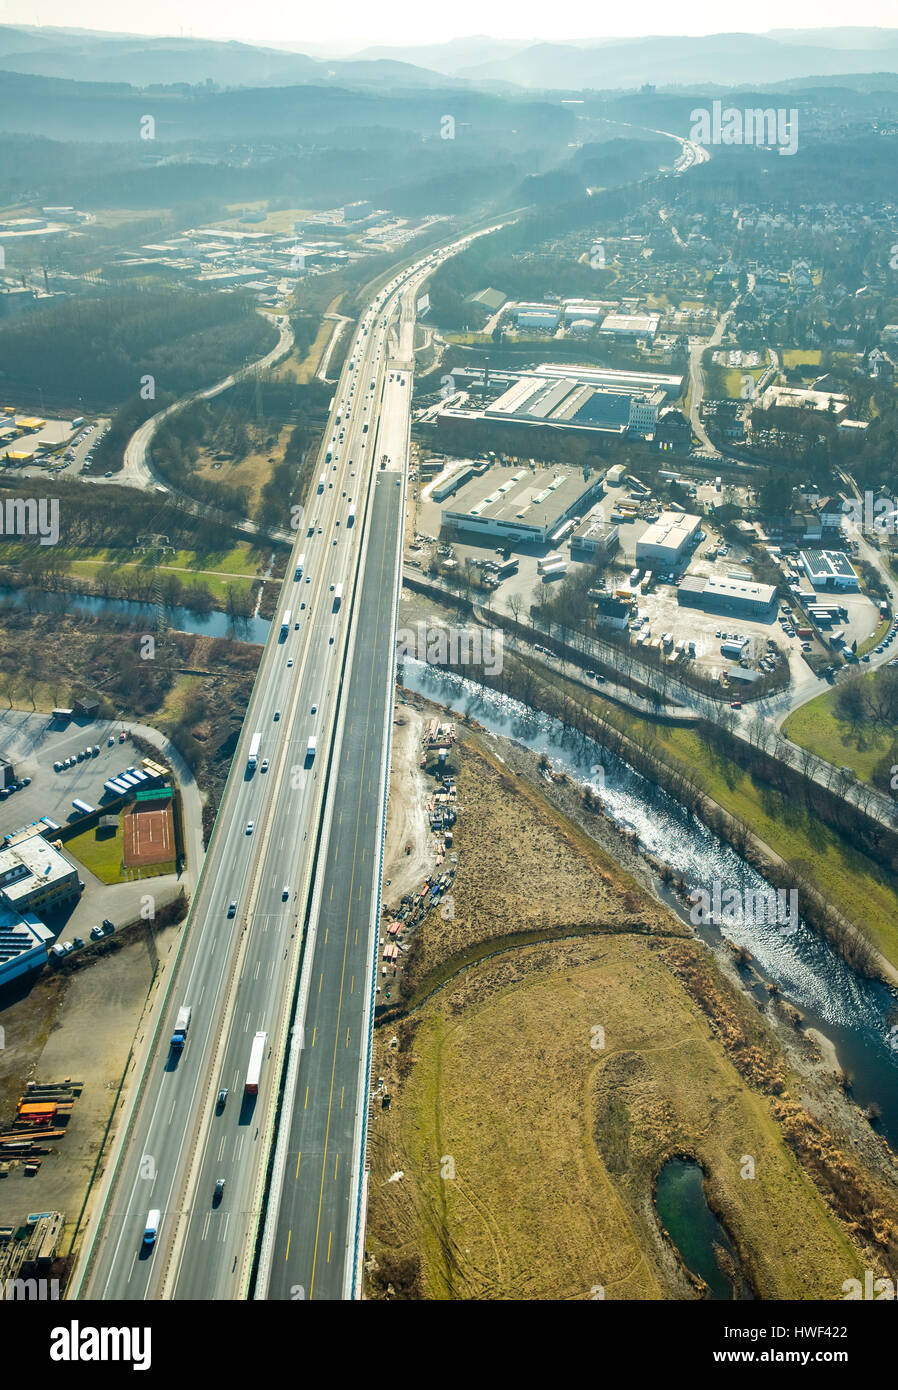 Bau-Lenne-Viadukt, Autobahn A45, Hagen, Ruhr, Nordrhein-Westfalen, Deutschland Stockfoto